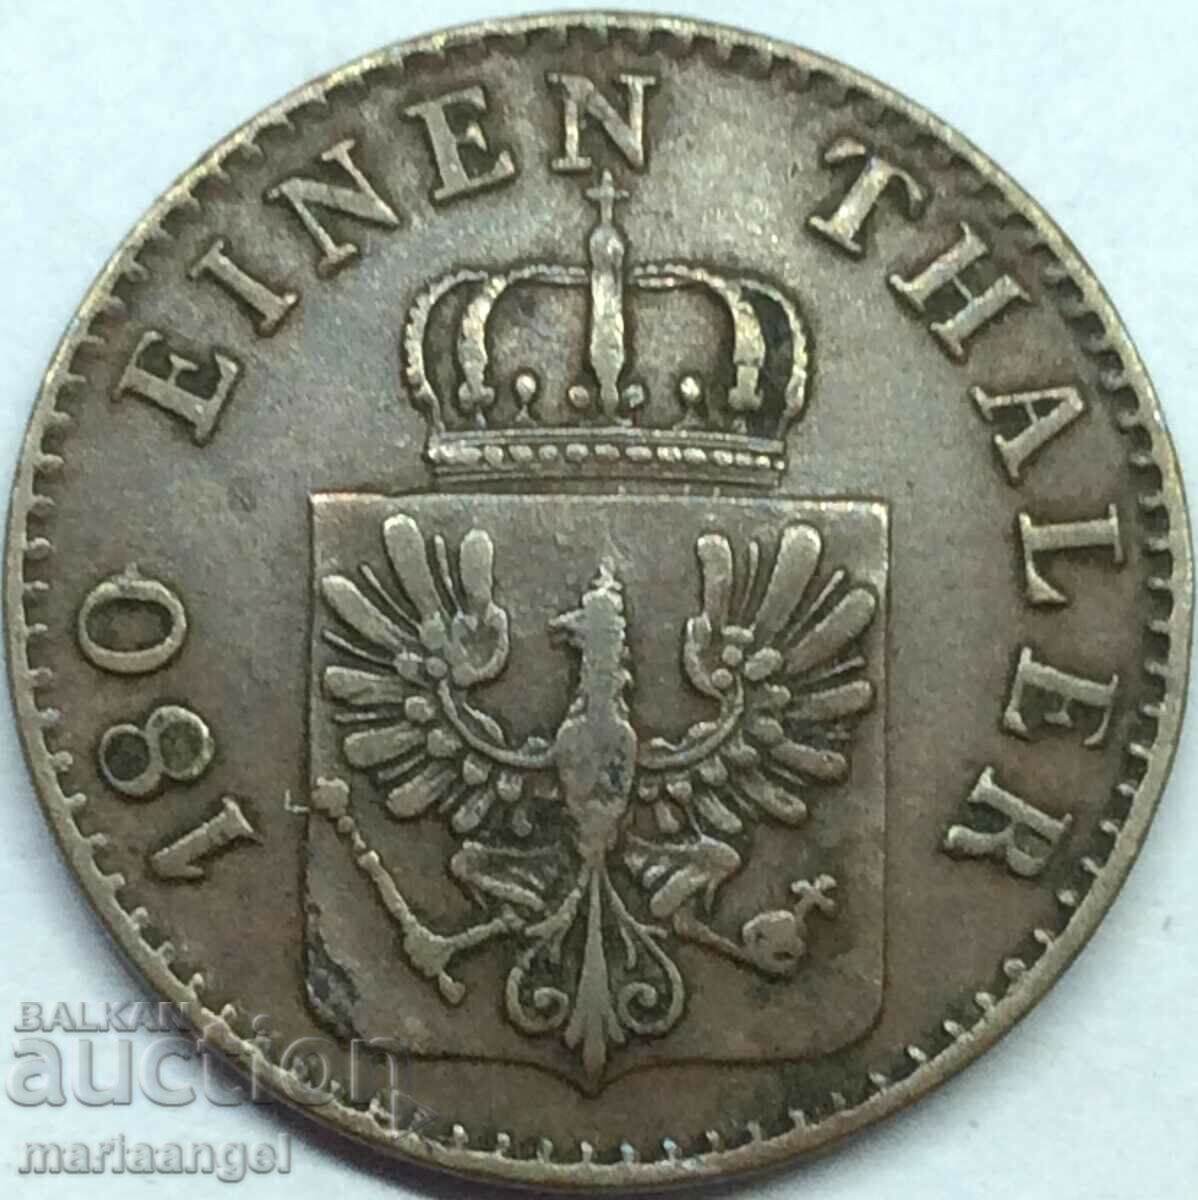 2 Pfennig 1867 Prusia Germania